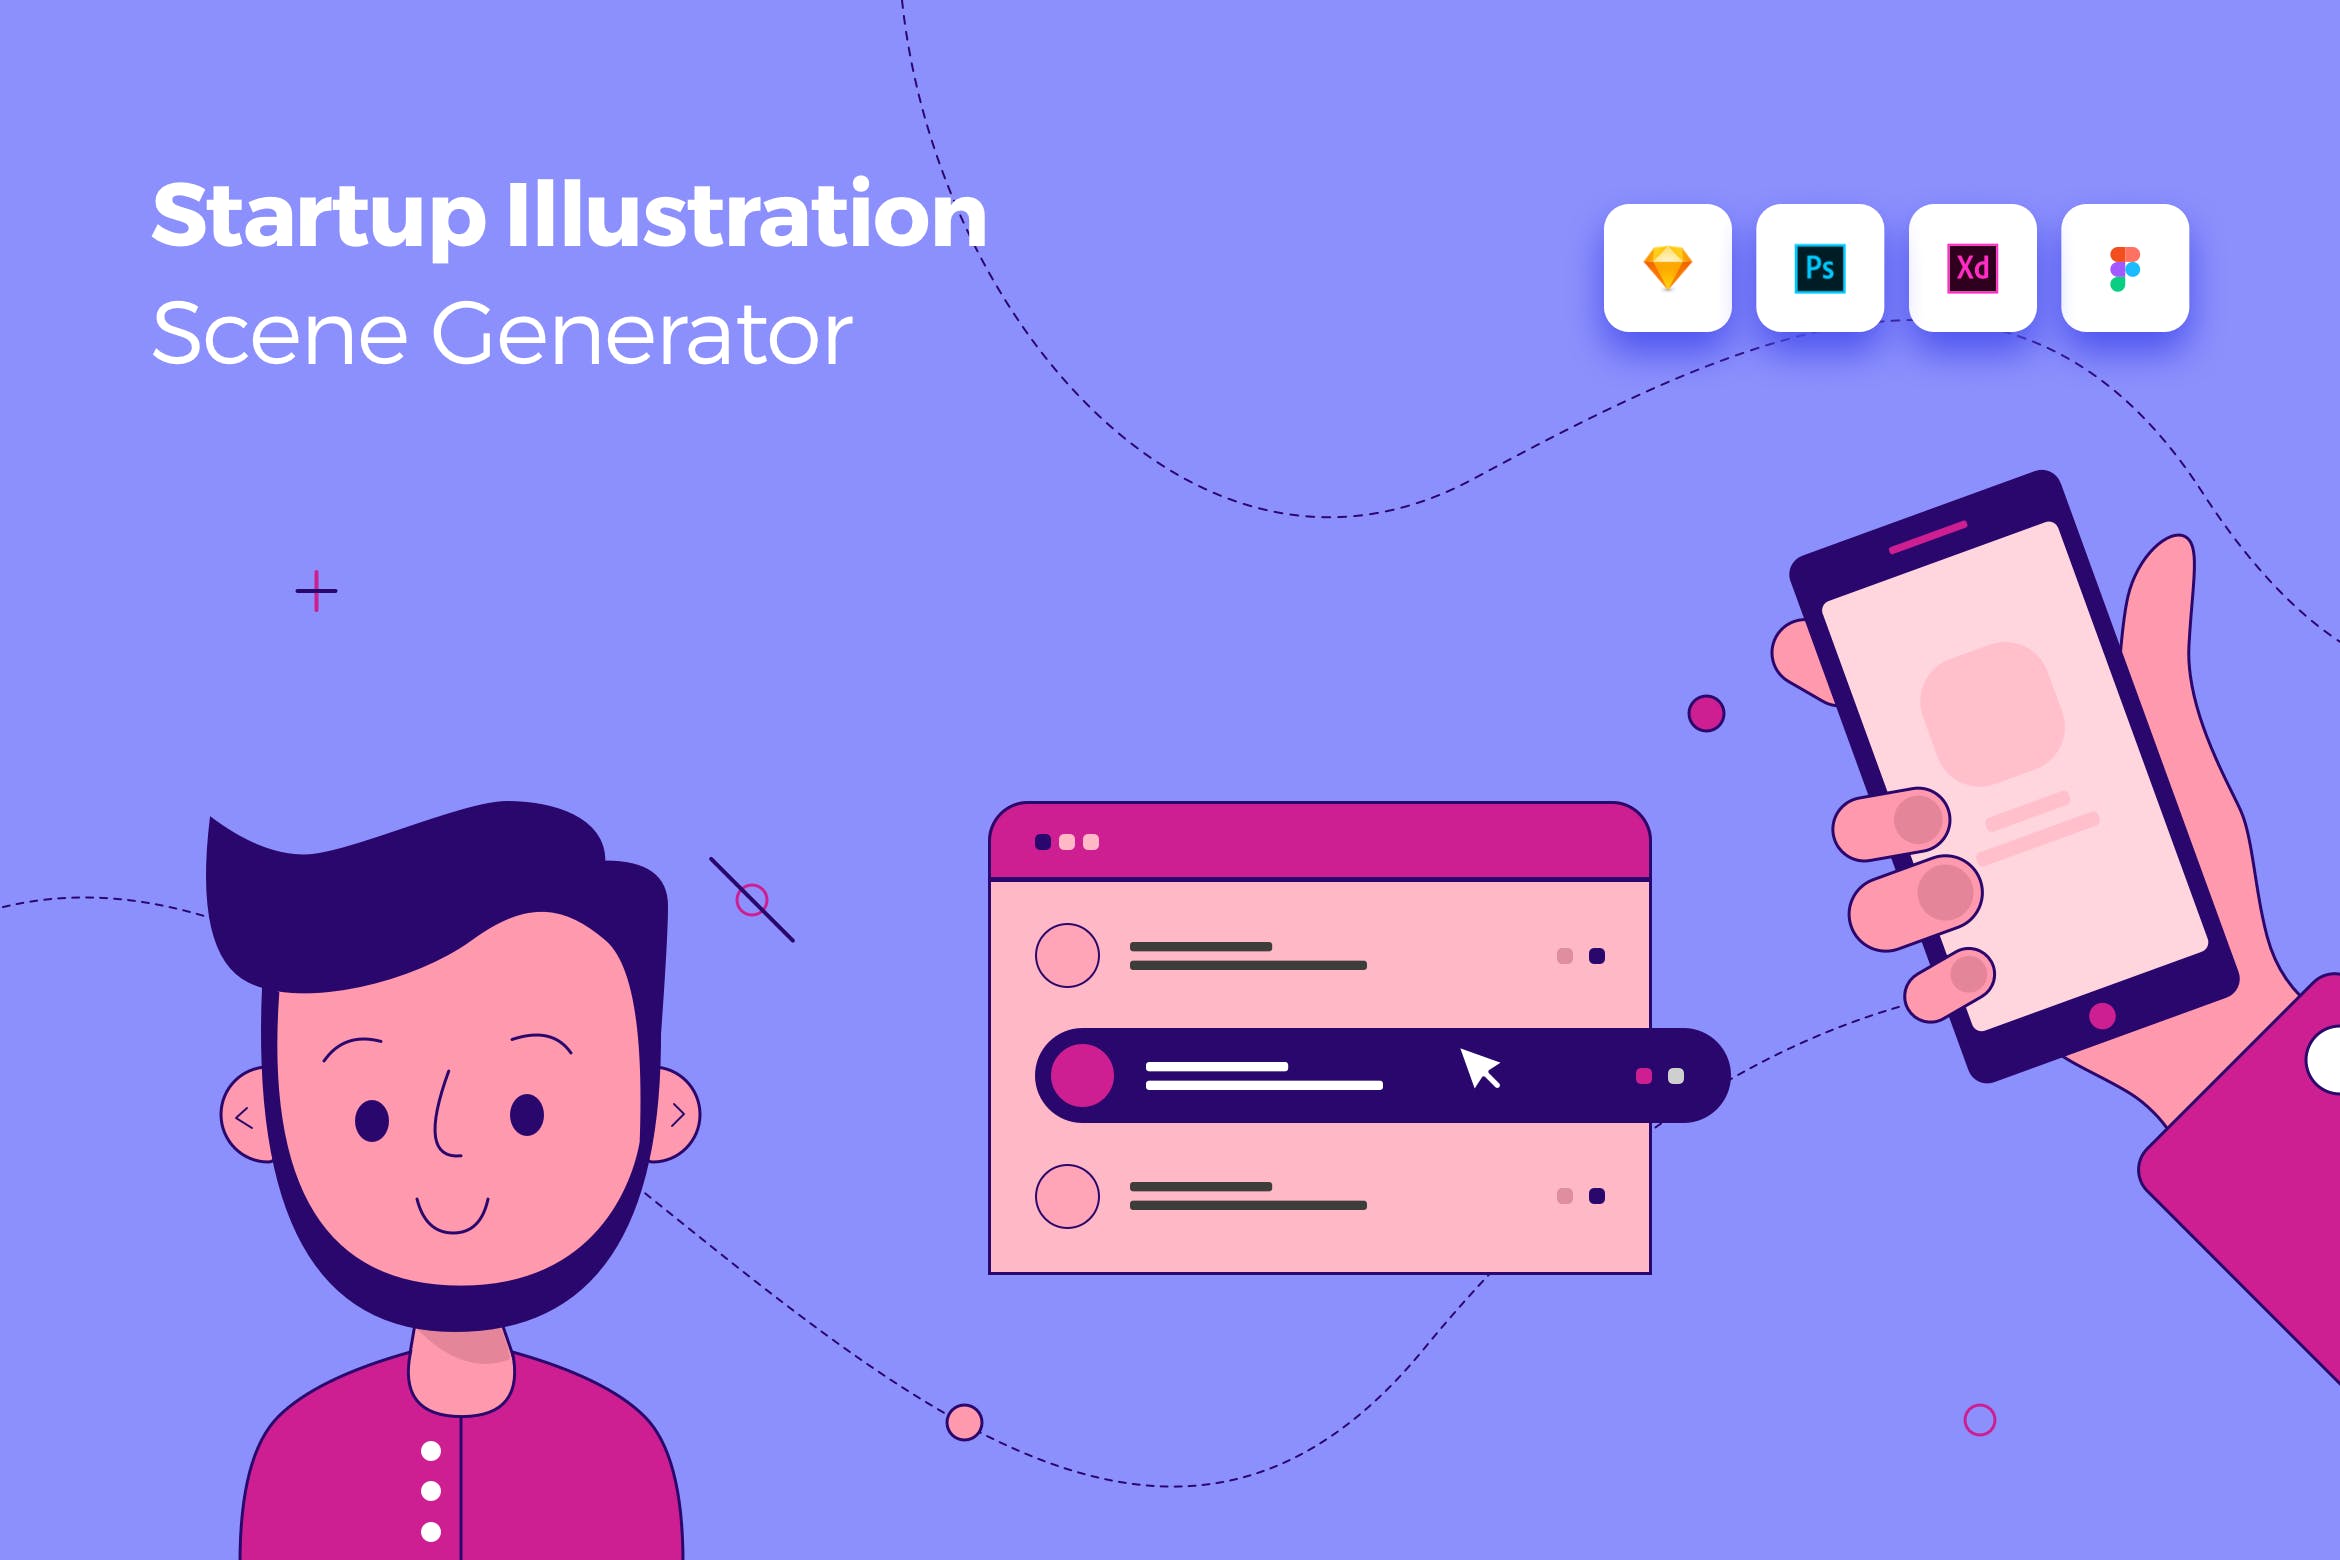 头像/浏览器/手机网站设计场景插画设计素材 Startup Illustration Scene Generator Kit插图